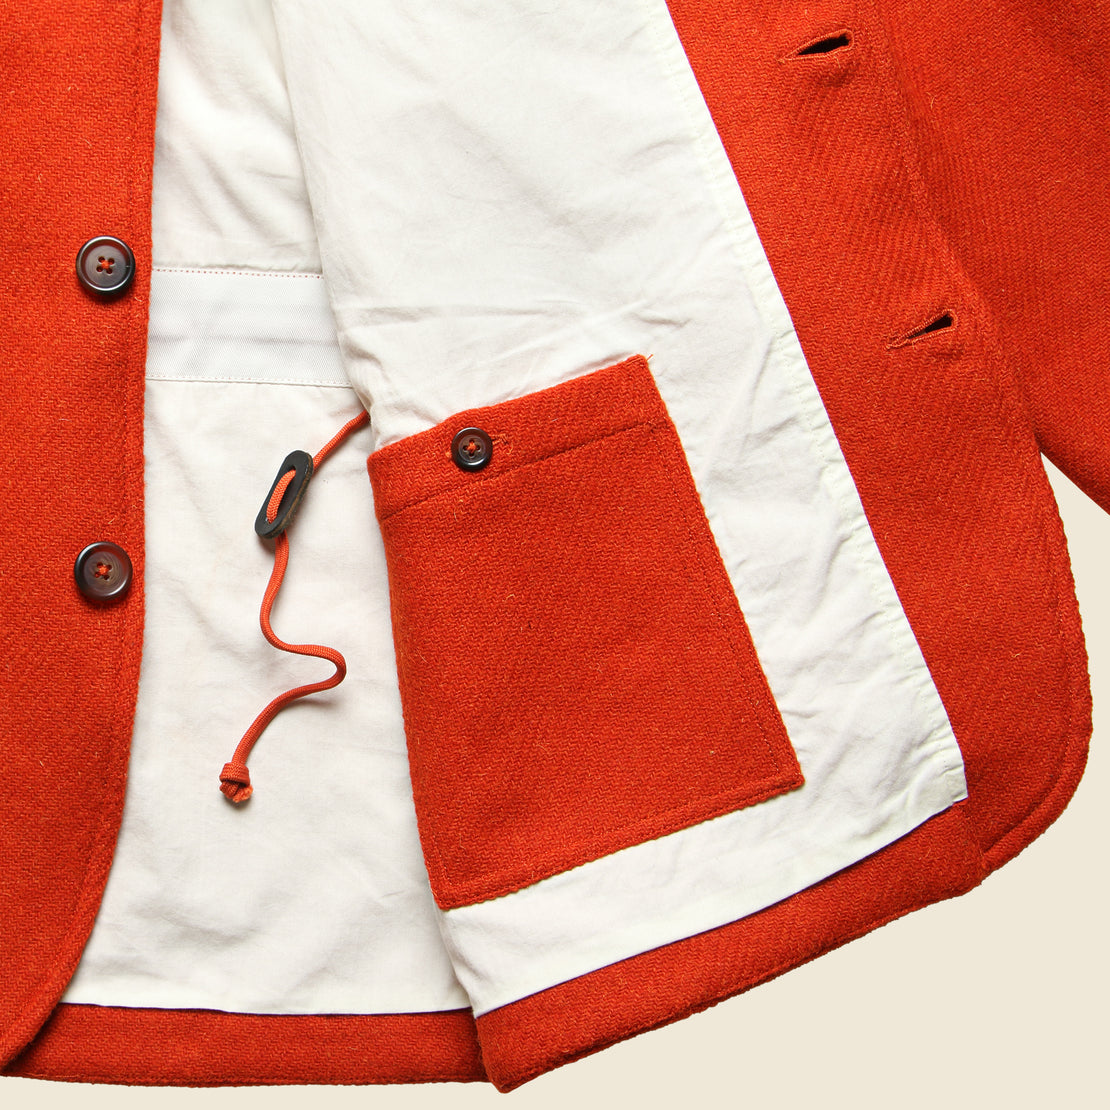 Norfolk Tweed Bakers Jacket - Orange - Universal Works - STAG Provisions - Outerwear - Coat / Jacket